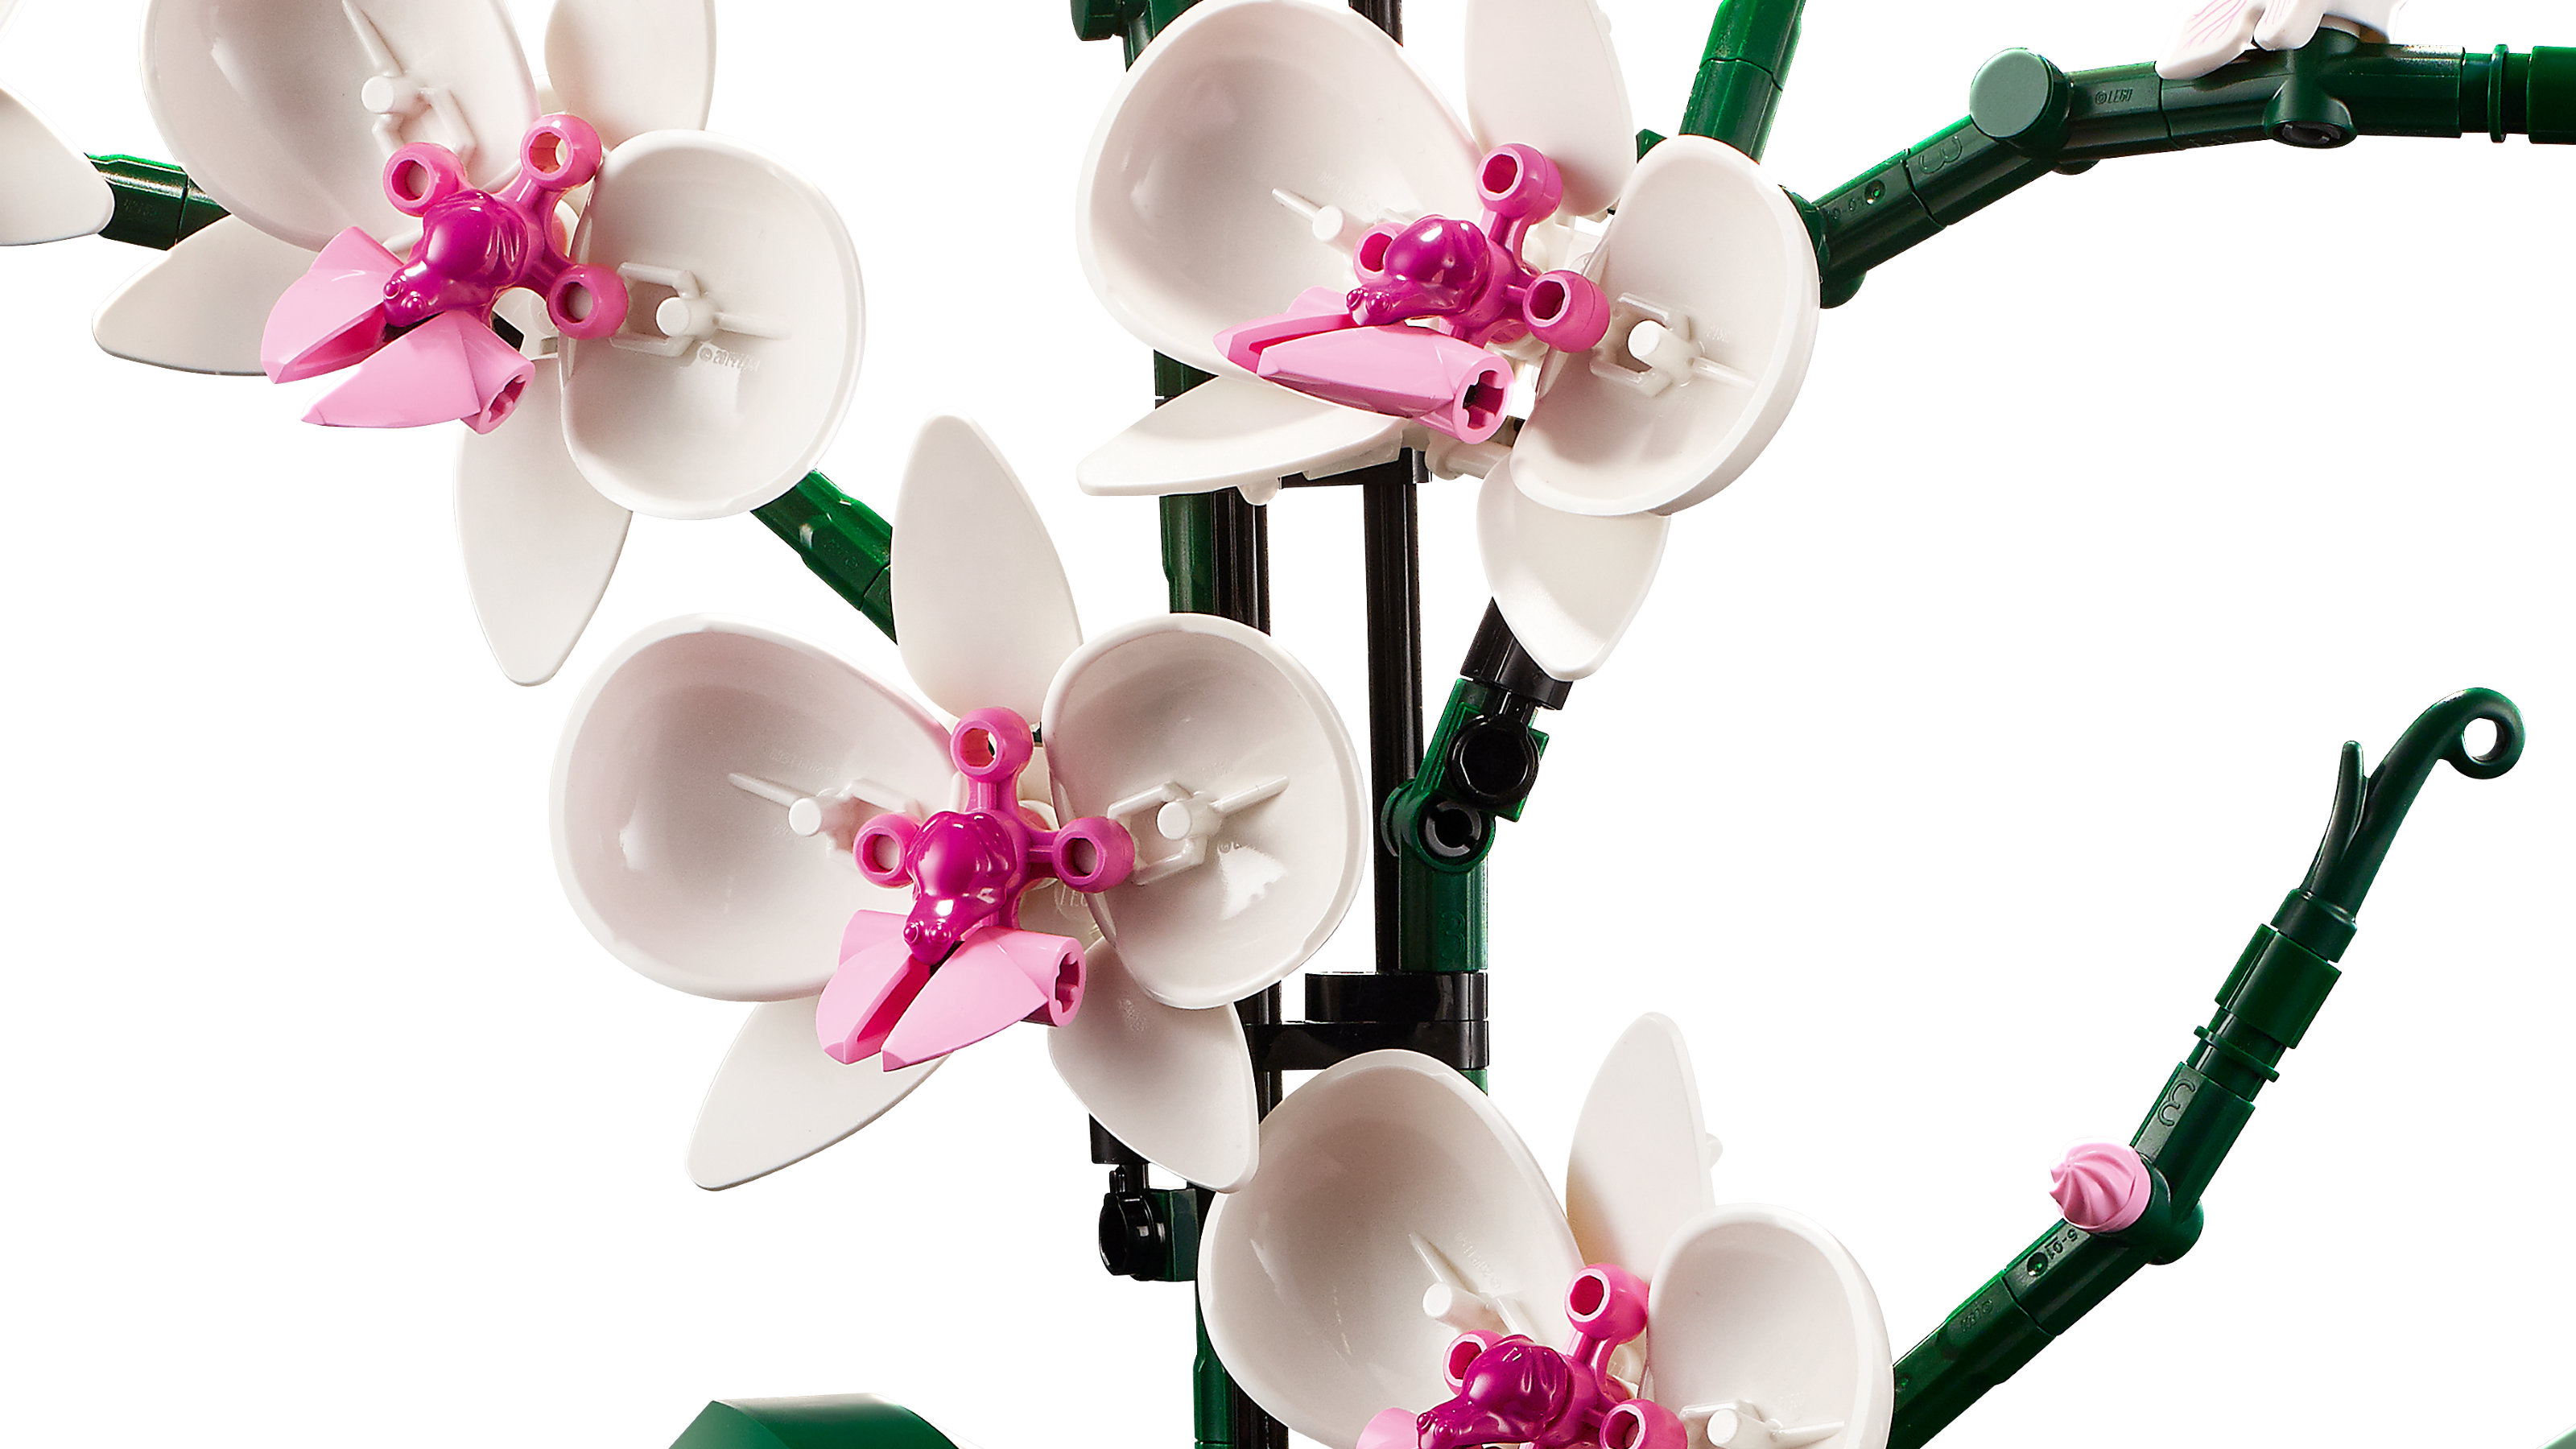 Lego 10311 Orchidea – Giocheria Civitanova Marche